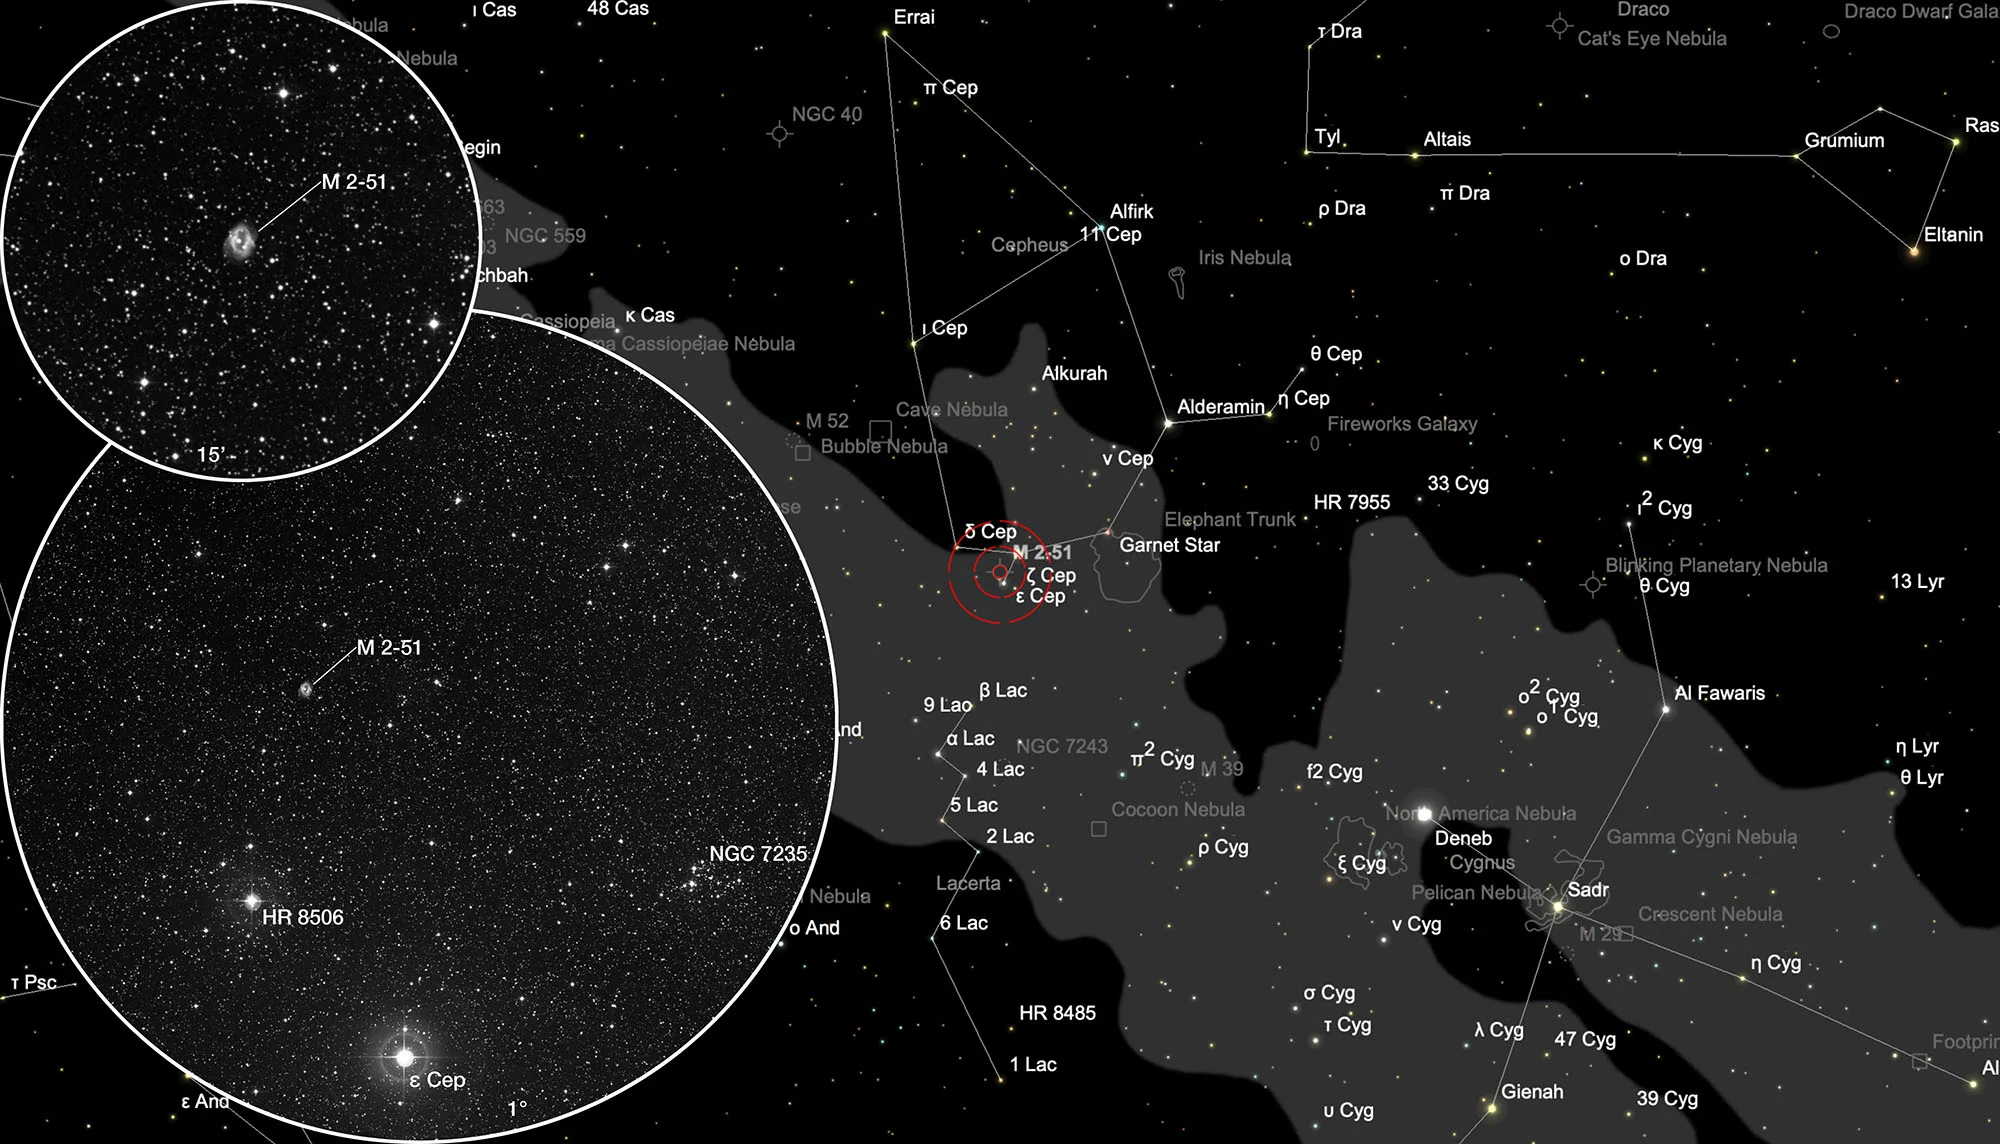 Auffindkarte Planetarischer Nebel Minkowski 2-51 + Sternhaufen NGC 7235